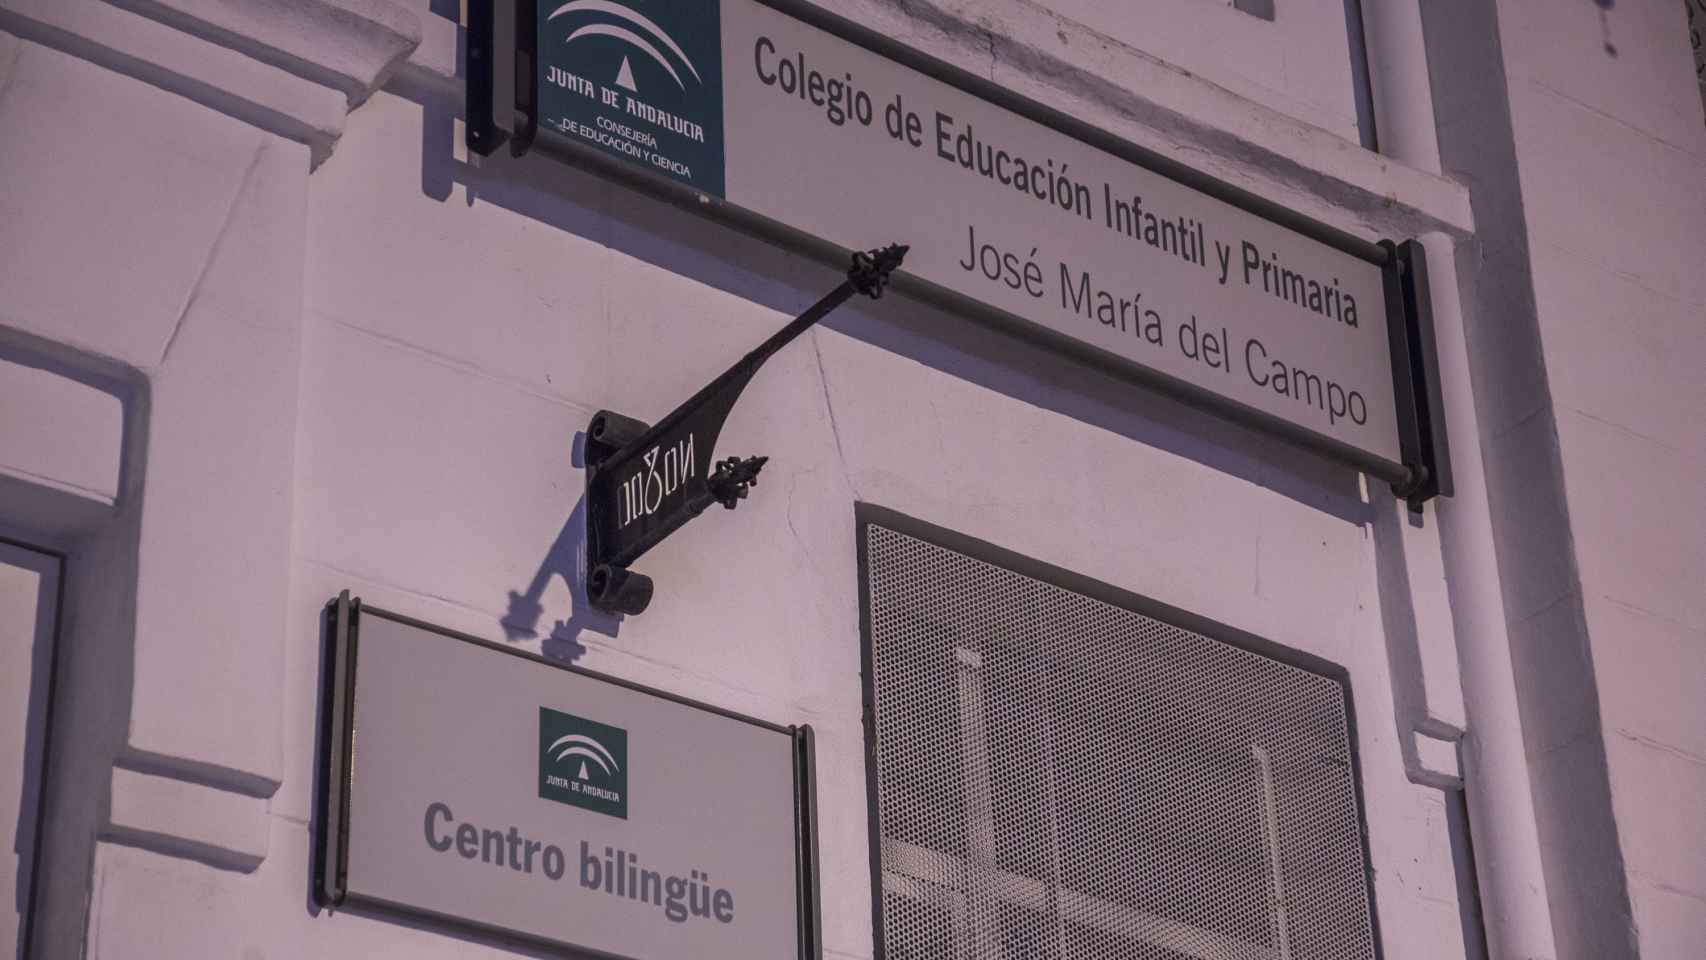 Colegio de Educación Infantil y Primaria, José María del Campo.